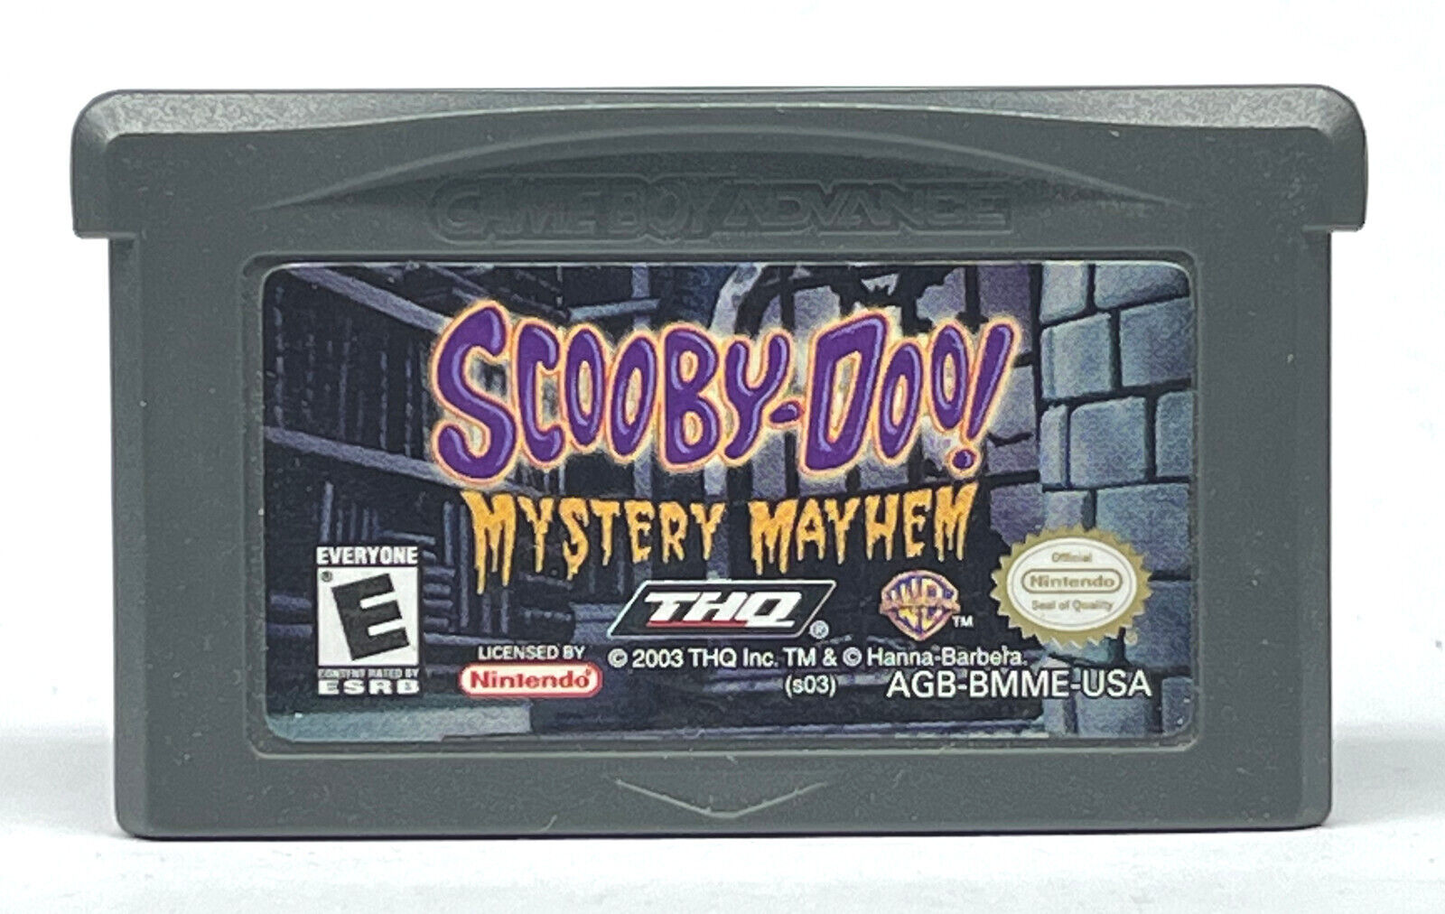 Scooby Doo Mystery Mayhem - Game Boy Advance